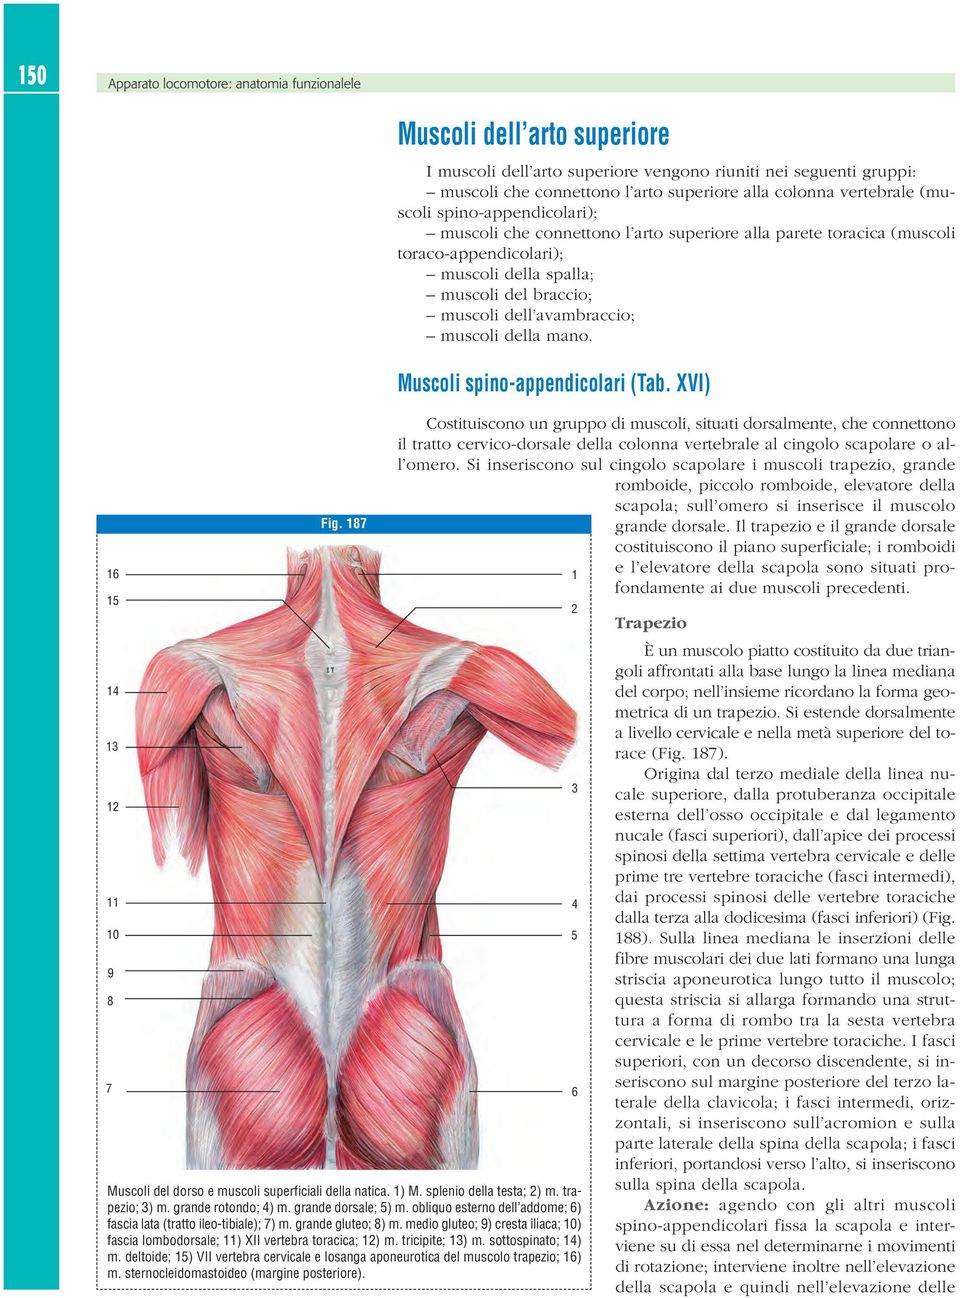 muscoli che connettono l arto superiore alla parete toracica (muscoli toraco-appendicolari); muscoli della spalla; muscoli del braccio; muscoli dell avambraccio; muscoli della mano.